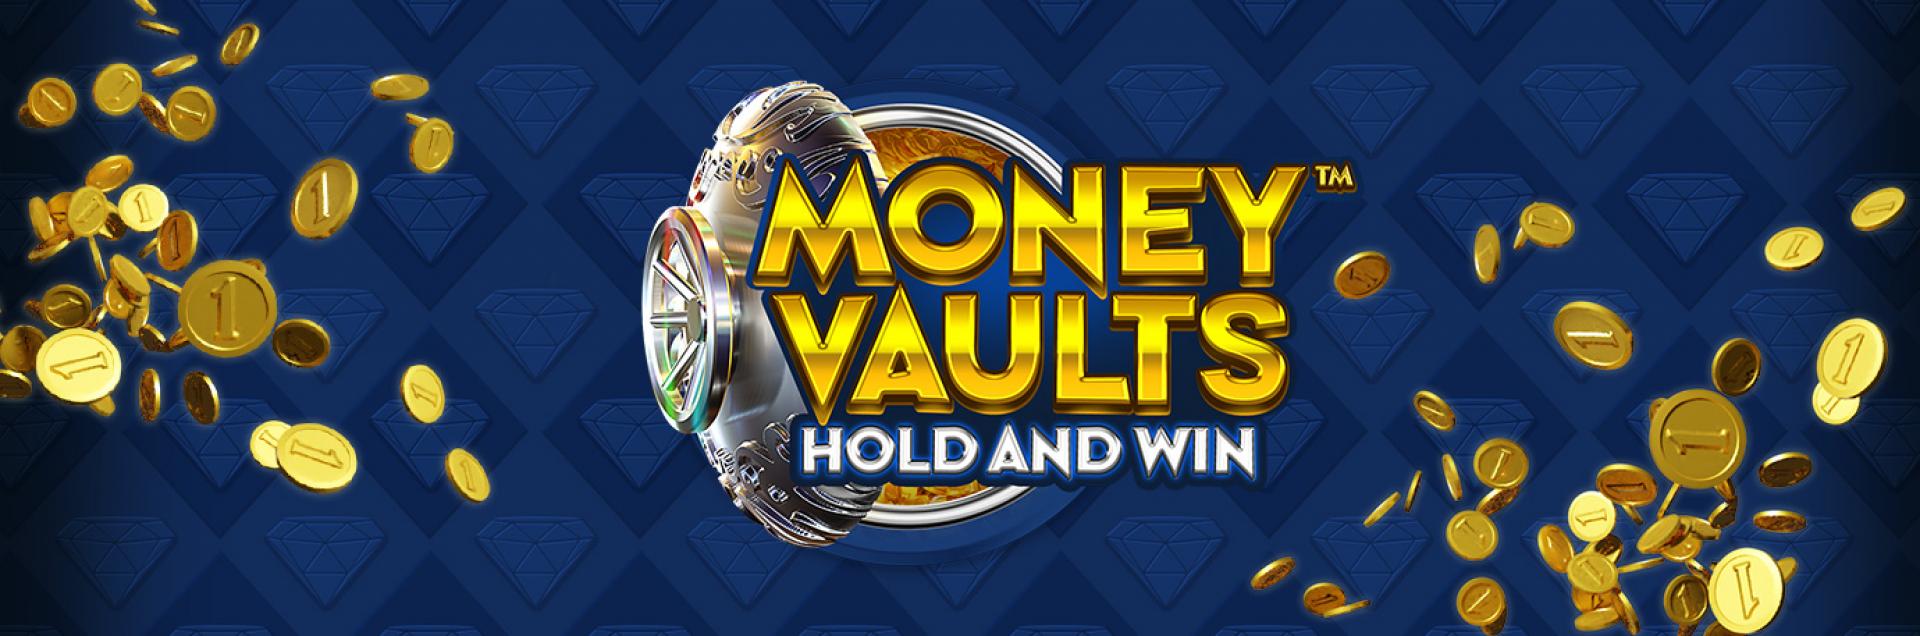 Money Vaults header games banner